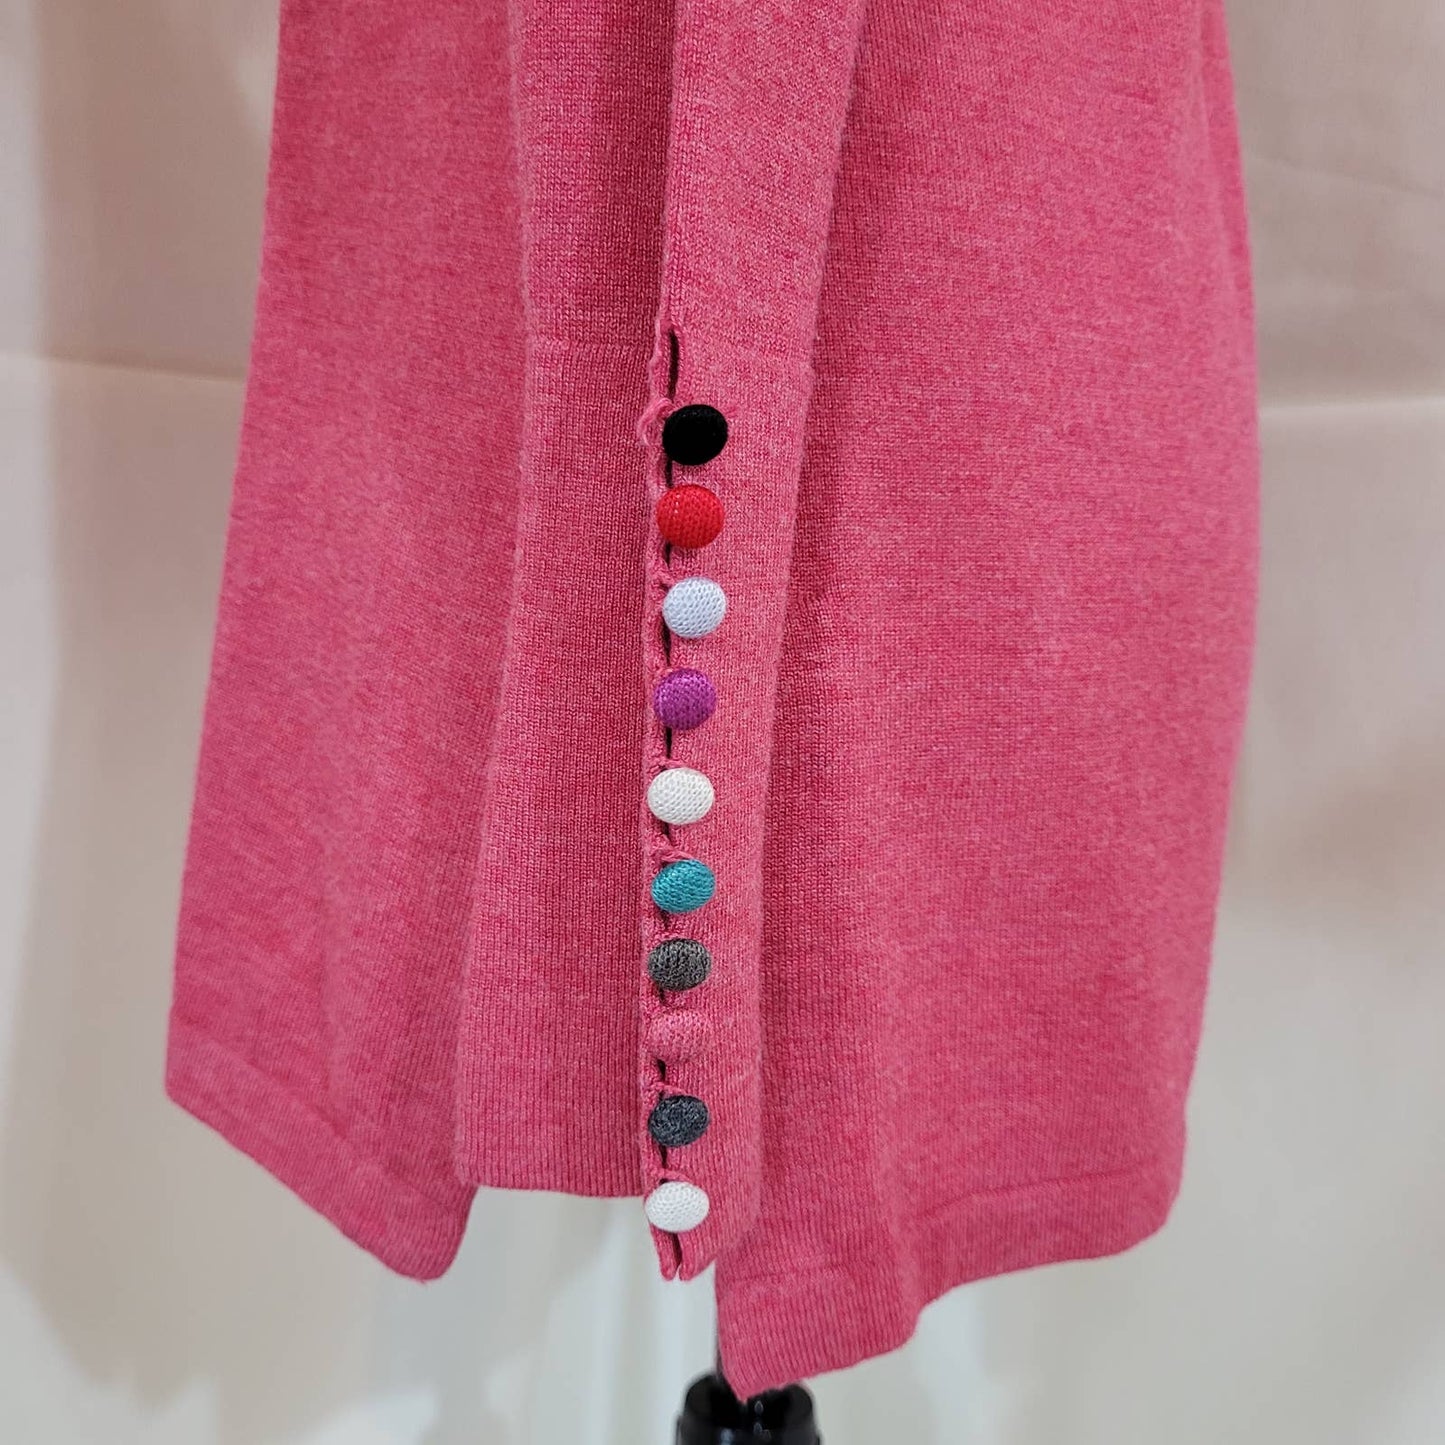 Robert Kitchen Canada Sweater with Rainbow Button Sleeves - Size SmallMarkita's ClosetRobert Kitchen Canada